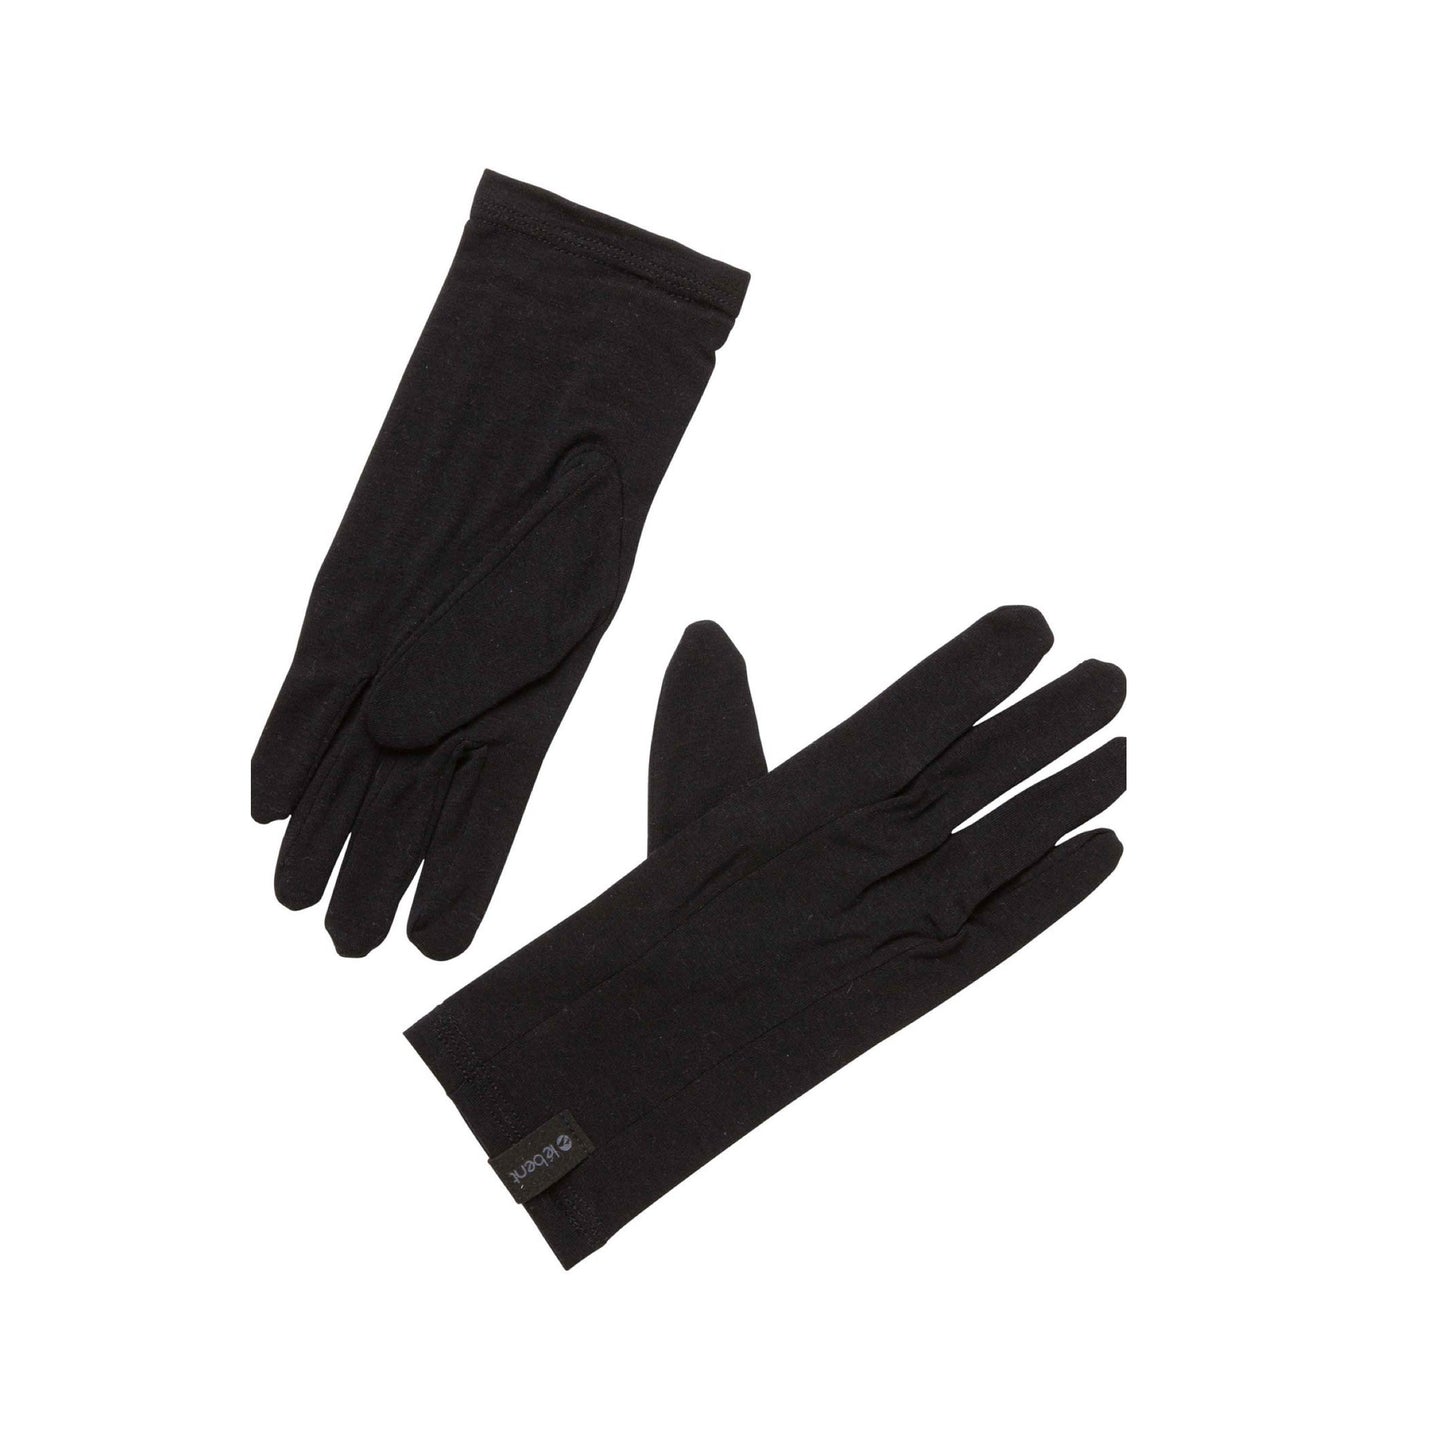 Le Bent Core Glove Liner 260